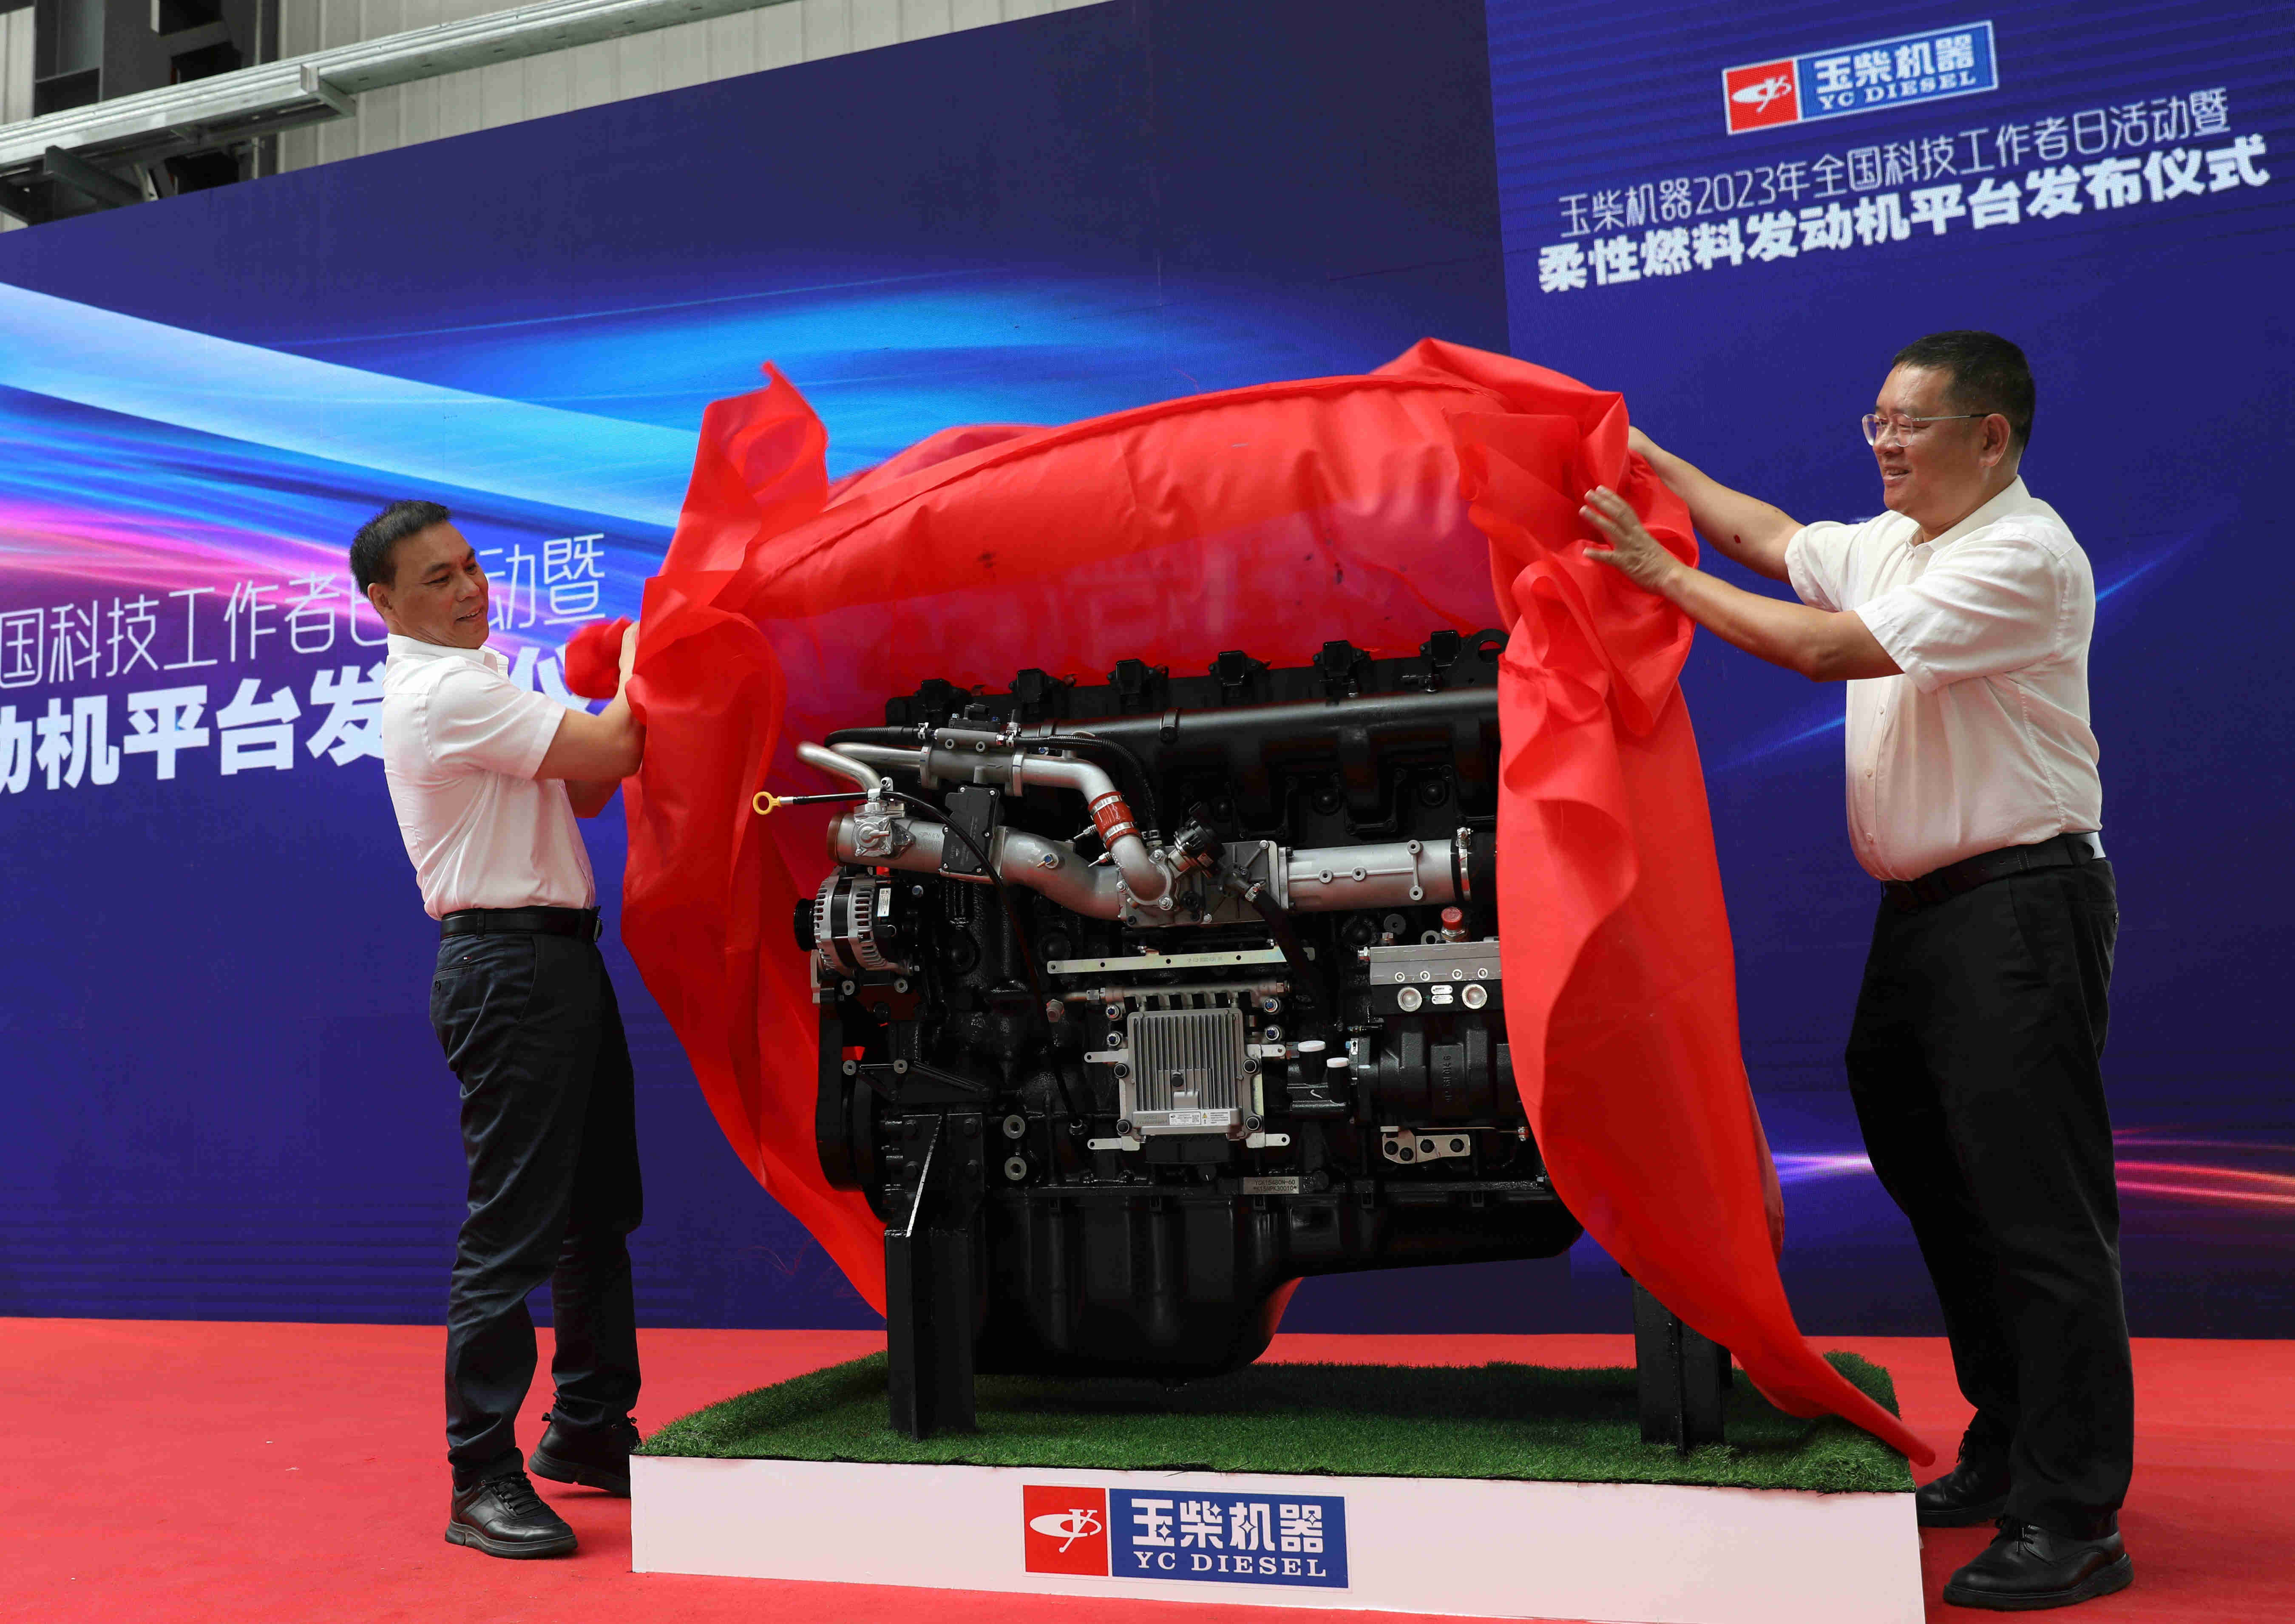 บริษัทหยูไฉ (Yuchai) เปิดตัวเครื่องยนต์เชื้อเพลิงรุ่นใหม่ สนับสนุนยุทธศาสตร์ “คาร์บอนคู่”